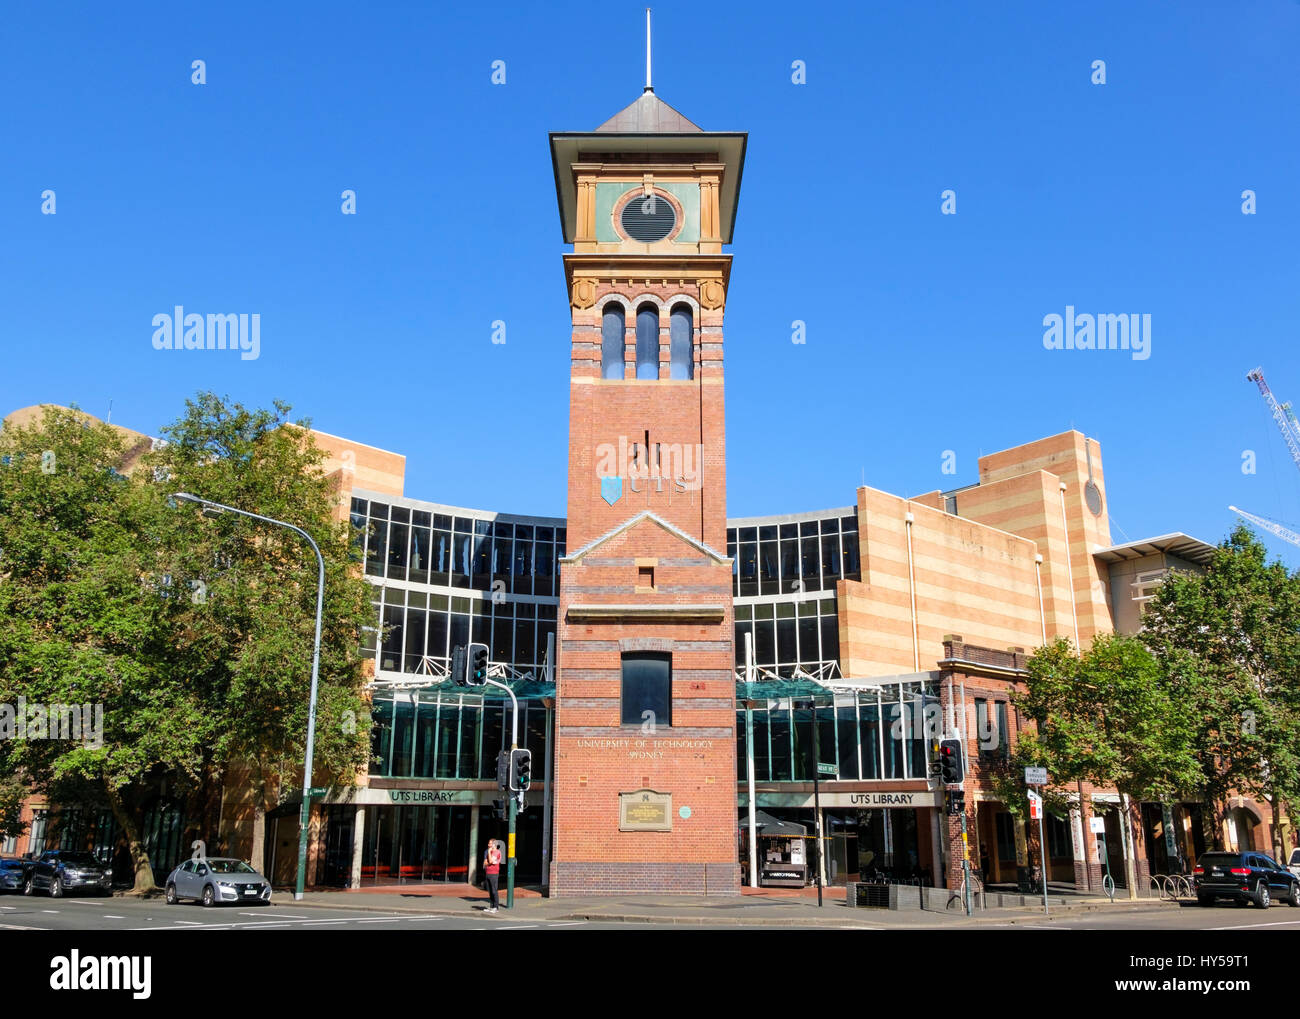 La UTS (Universidad de Tecnología, Sydney) Haymarket Campus - biblioteca universitaria y la torre del reloj. Quay Street, Ultimo. La arquitectura en la universidad australiana Foto de stock